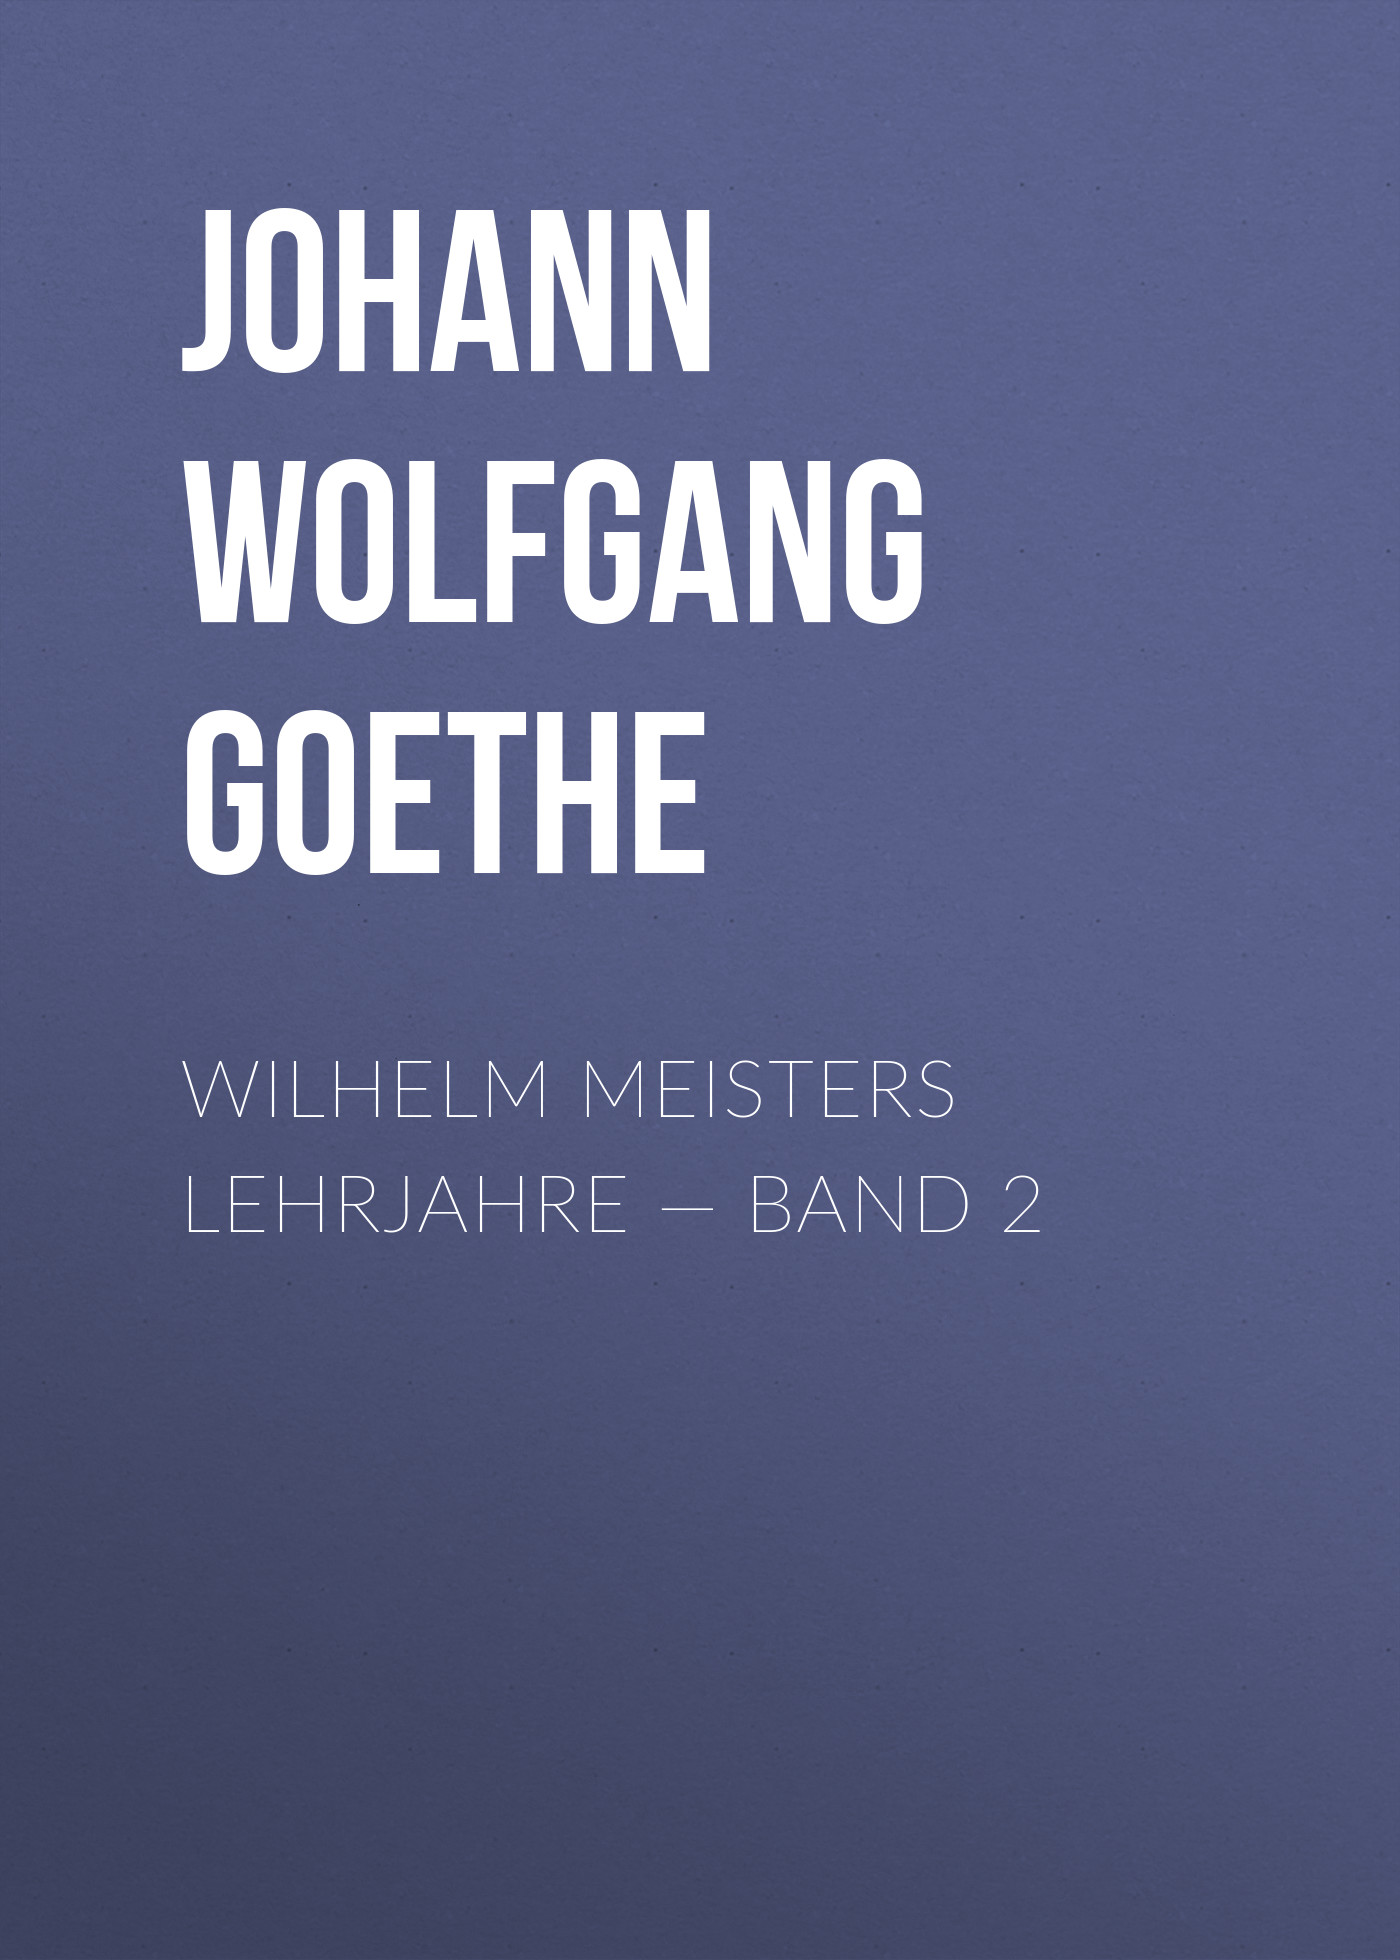 Wilhelm Meisters Lehrjahre — Band 2